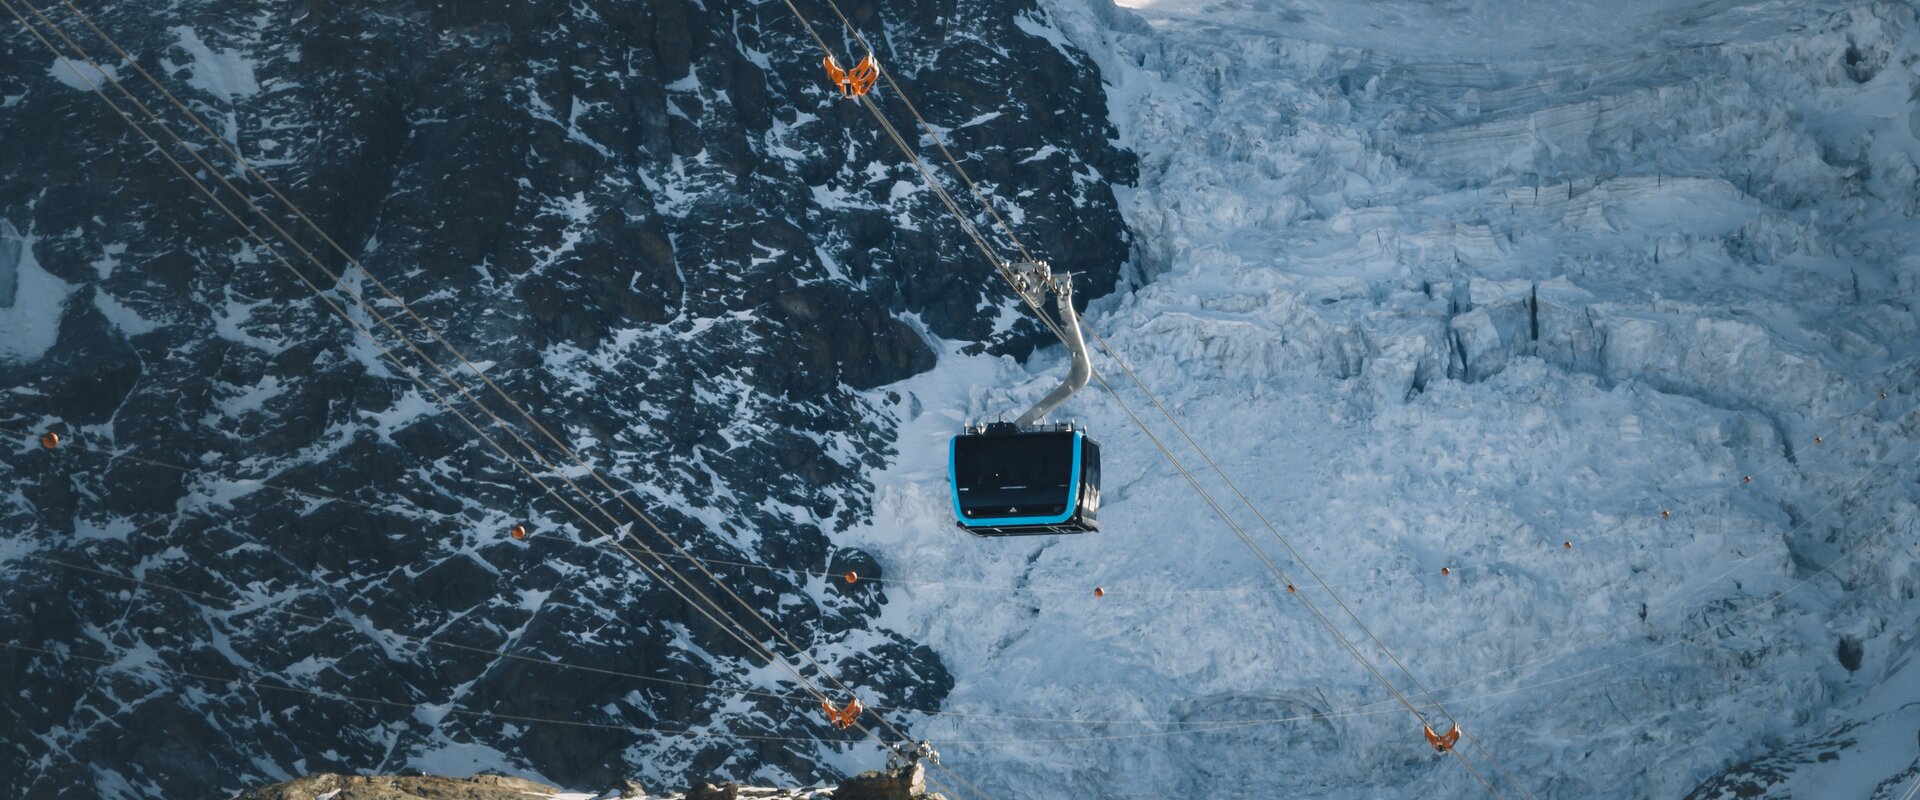 Matterhorn Glacier Ride 1 schwebt über den Theodulgletscher. Eiskluften erscheinen hinter der blauen Gondel.  | © Gabriel Perren 